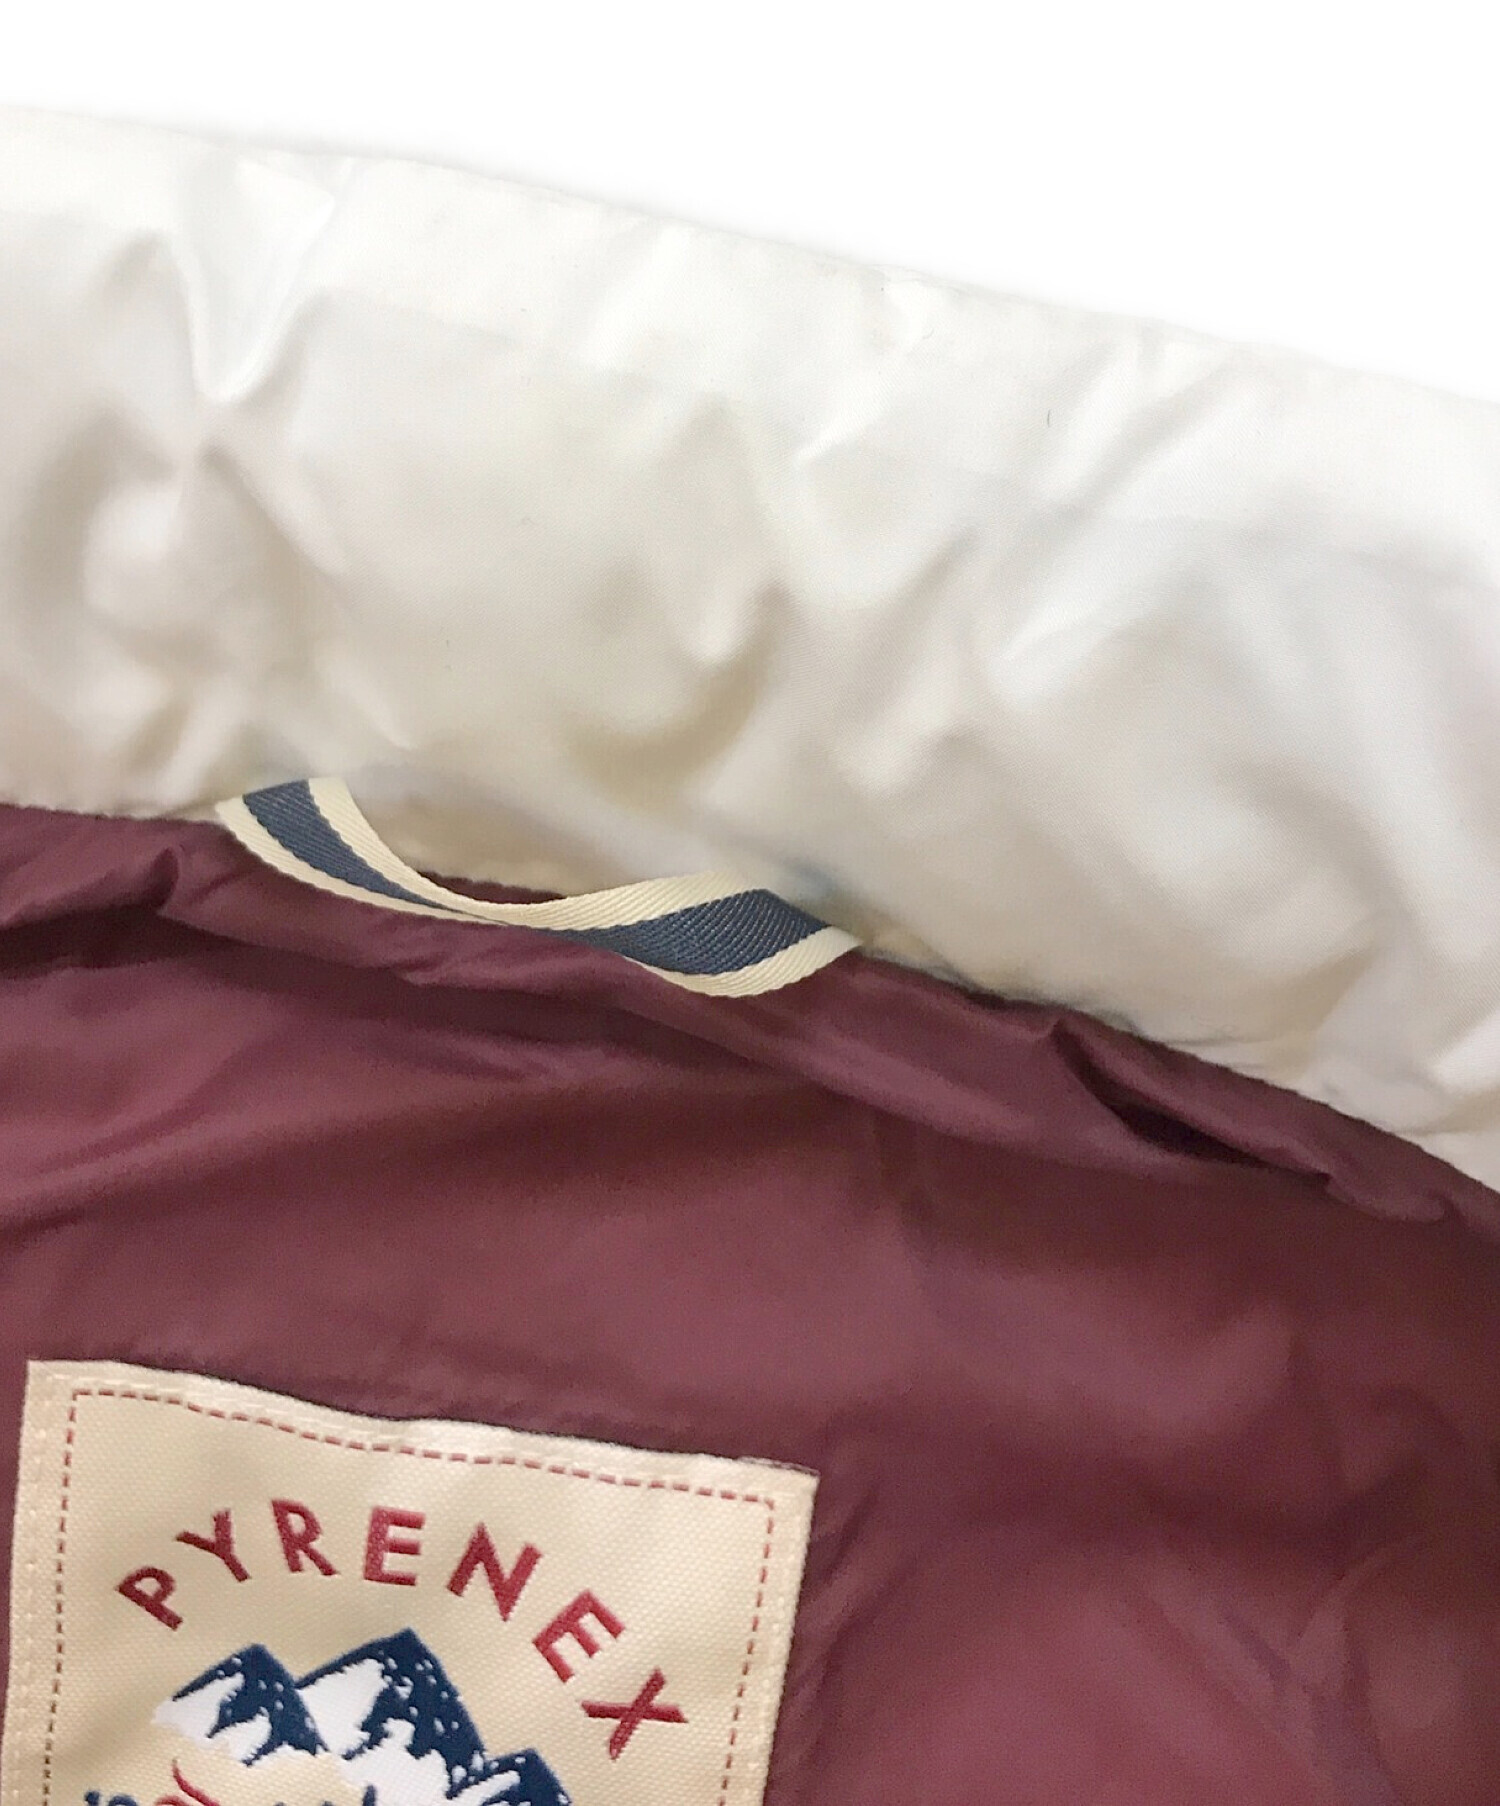 Pyrenex (ピレネックス) BRISE バイカラーダウンジャケット ホワイト×グレー サイズ:34